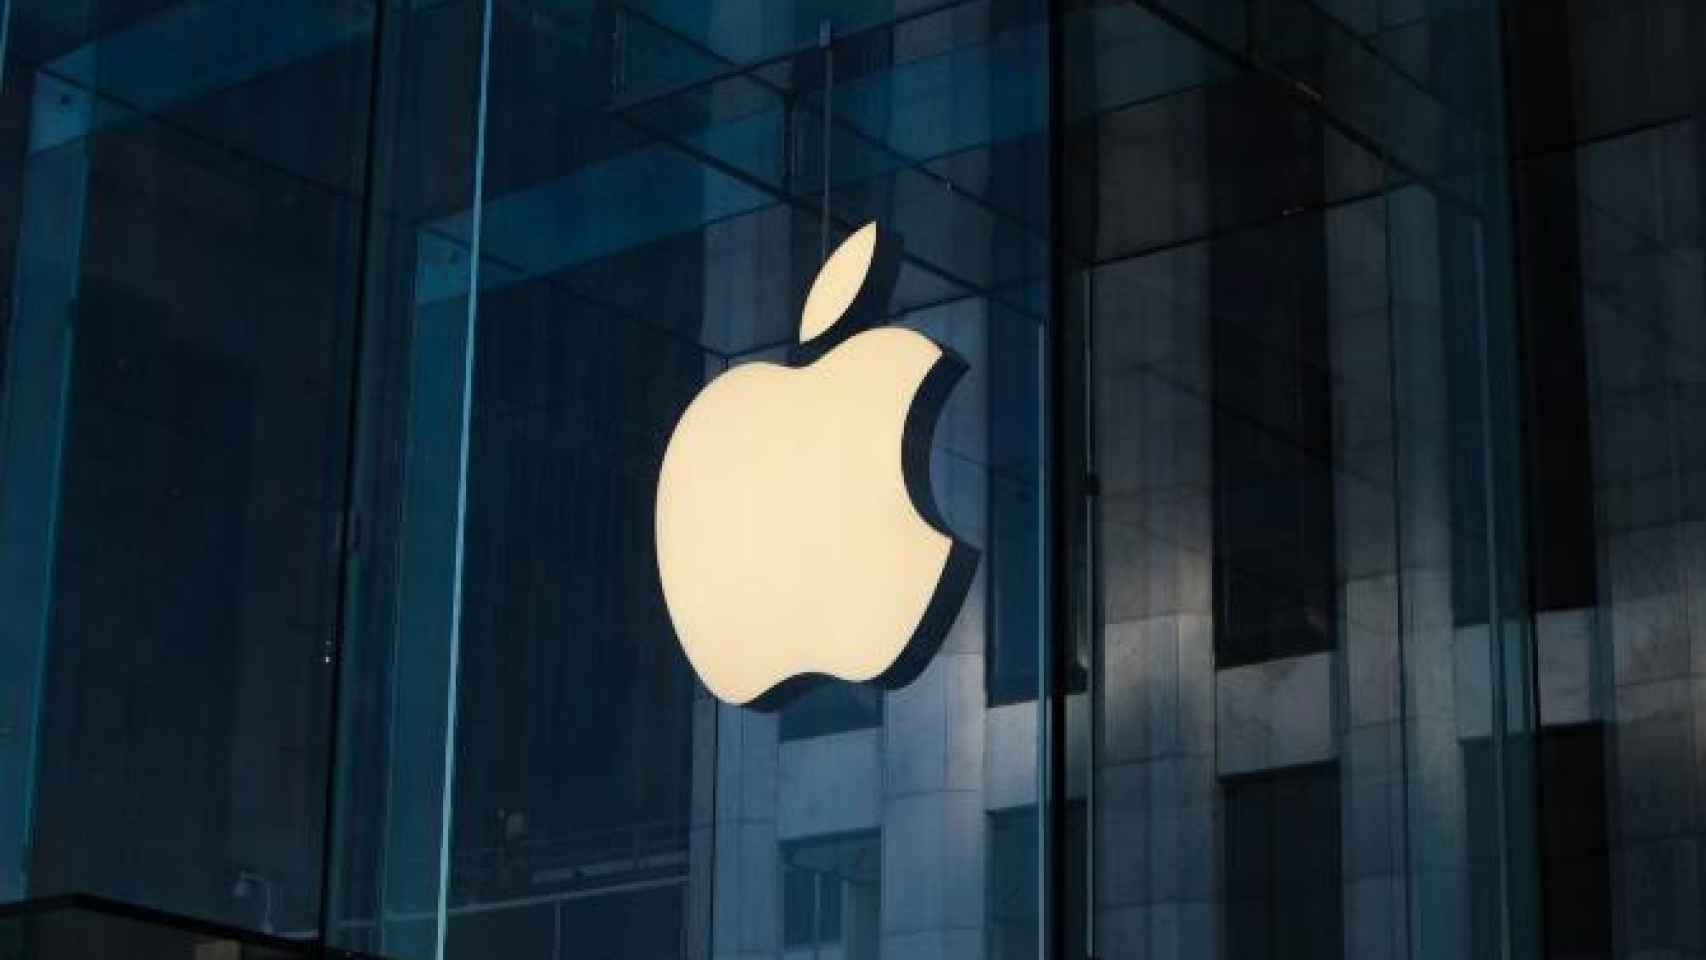 El conocido logo de Apple, una de las empresas que supera en tamaño a la economía española / Laurenz Heymann en UNSPLASH